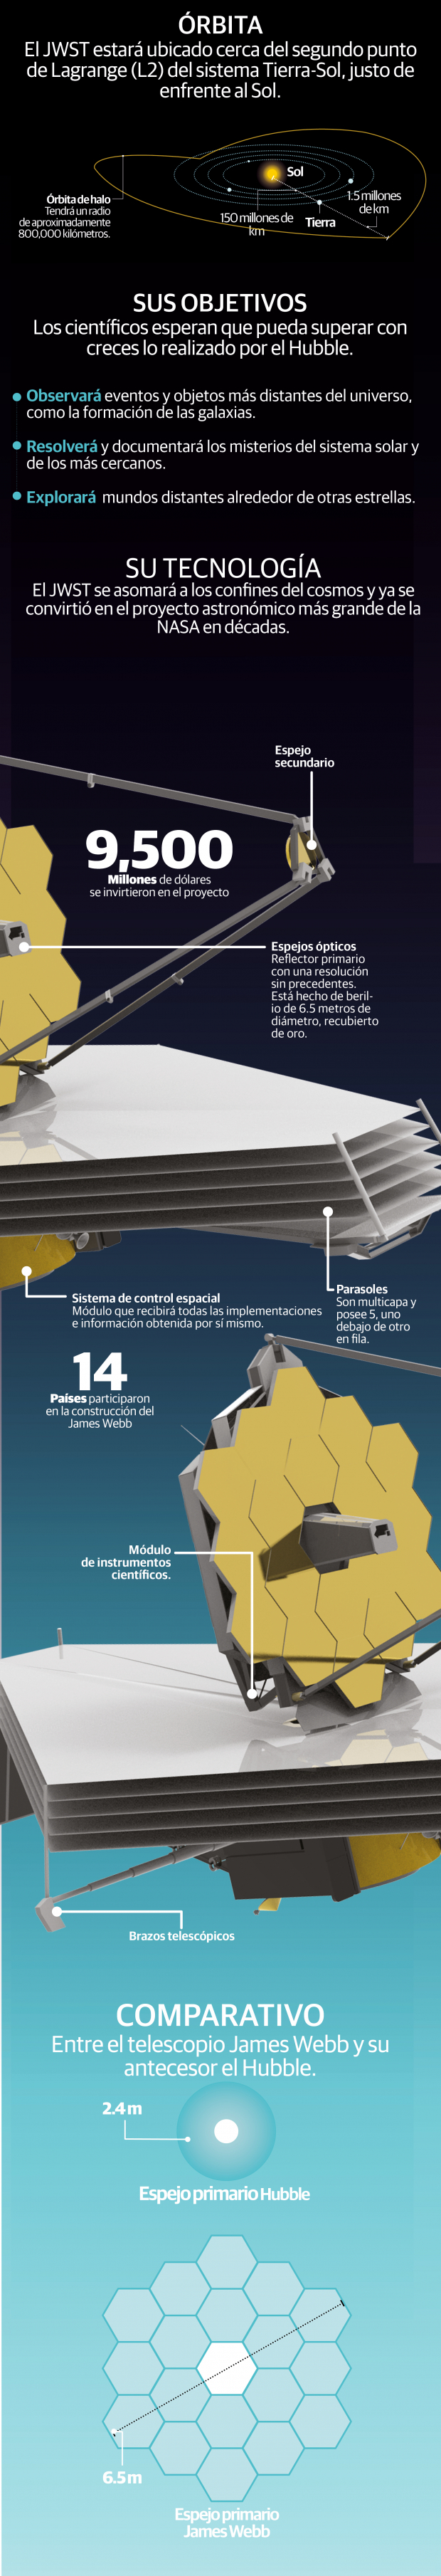 James Webb, el telescopio espacial más potente que ha creado la humanidad